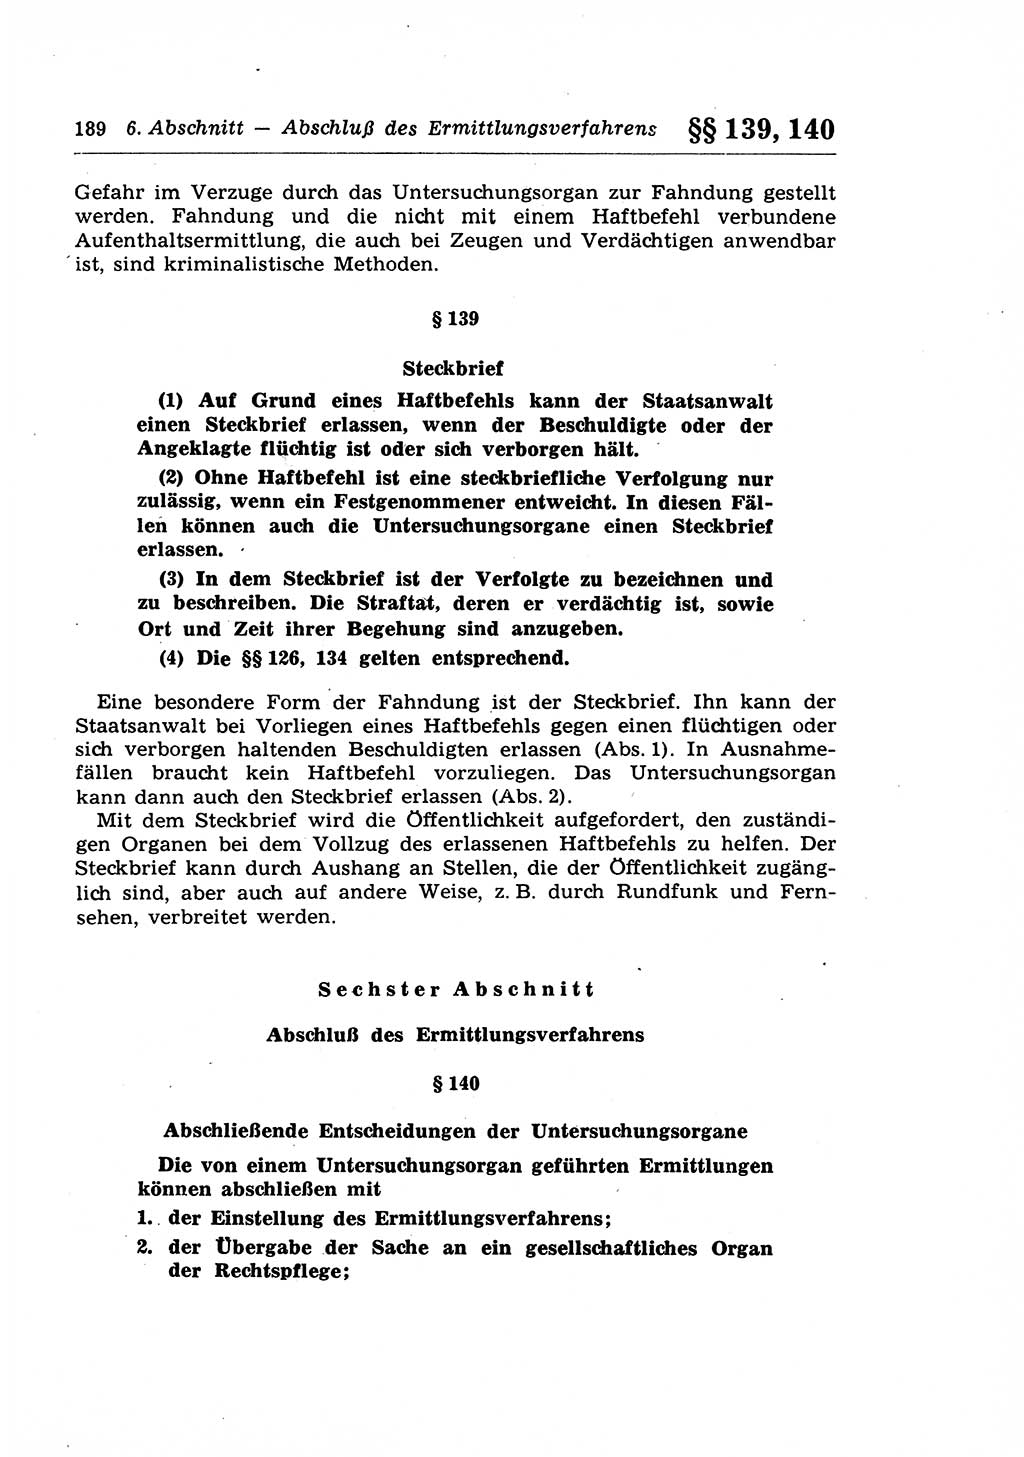 Strafprozeßrecht der DDR (Deutsche Demokratische Republik), Lehrkommentar zur Strafprozeßordnung (StPO) 1968, Seite 189 (Strafprozeßr. DDR Lehrkomm. StPO 19688, S. 189)